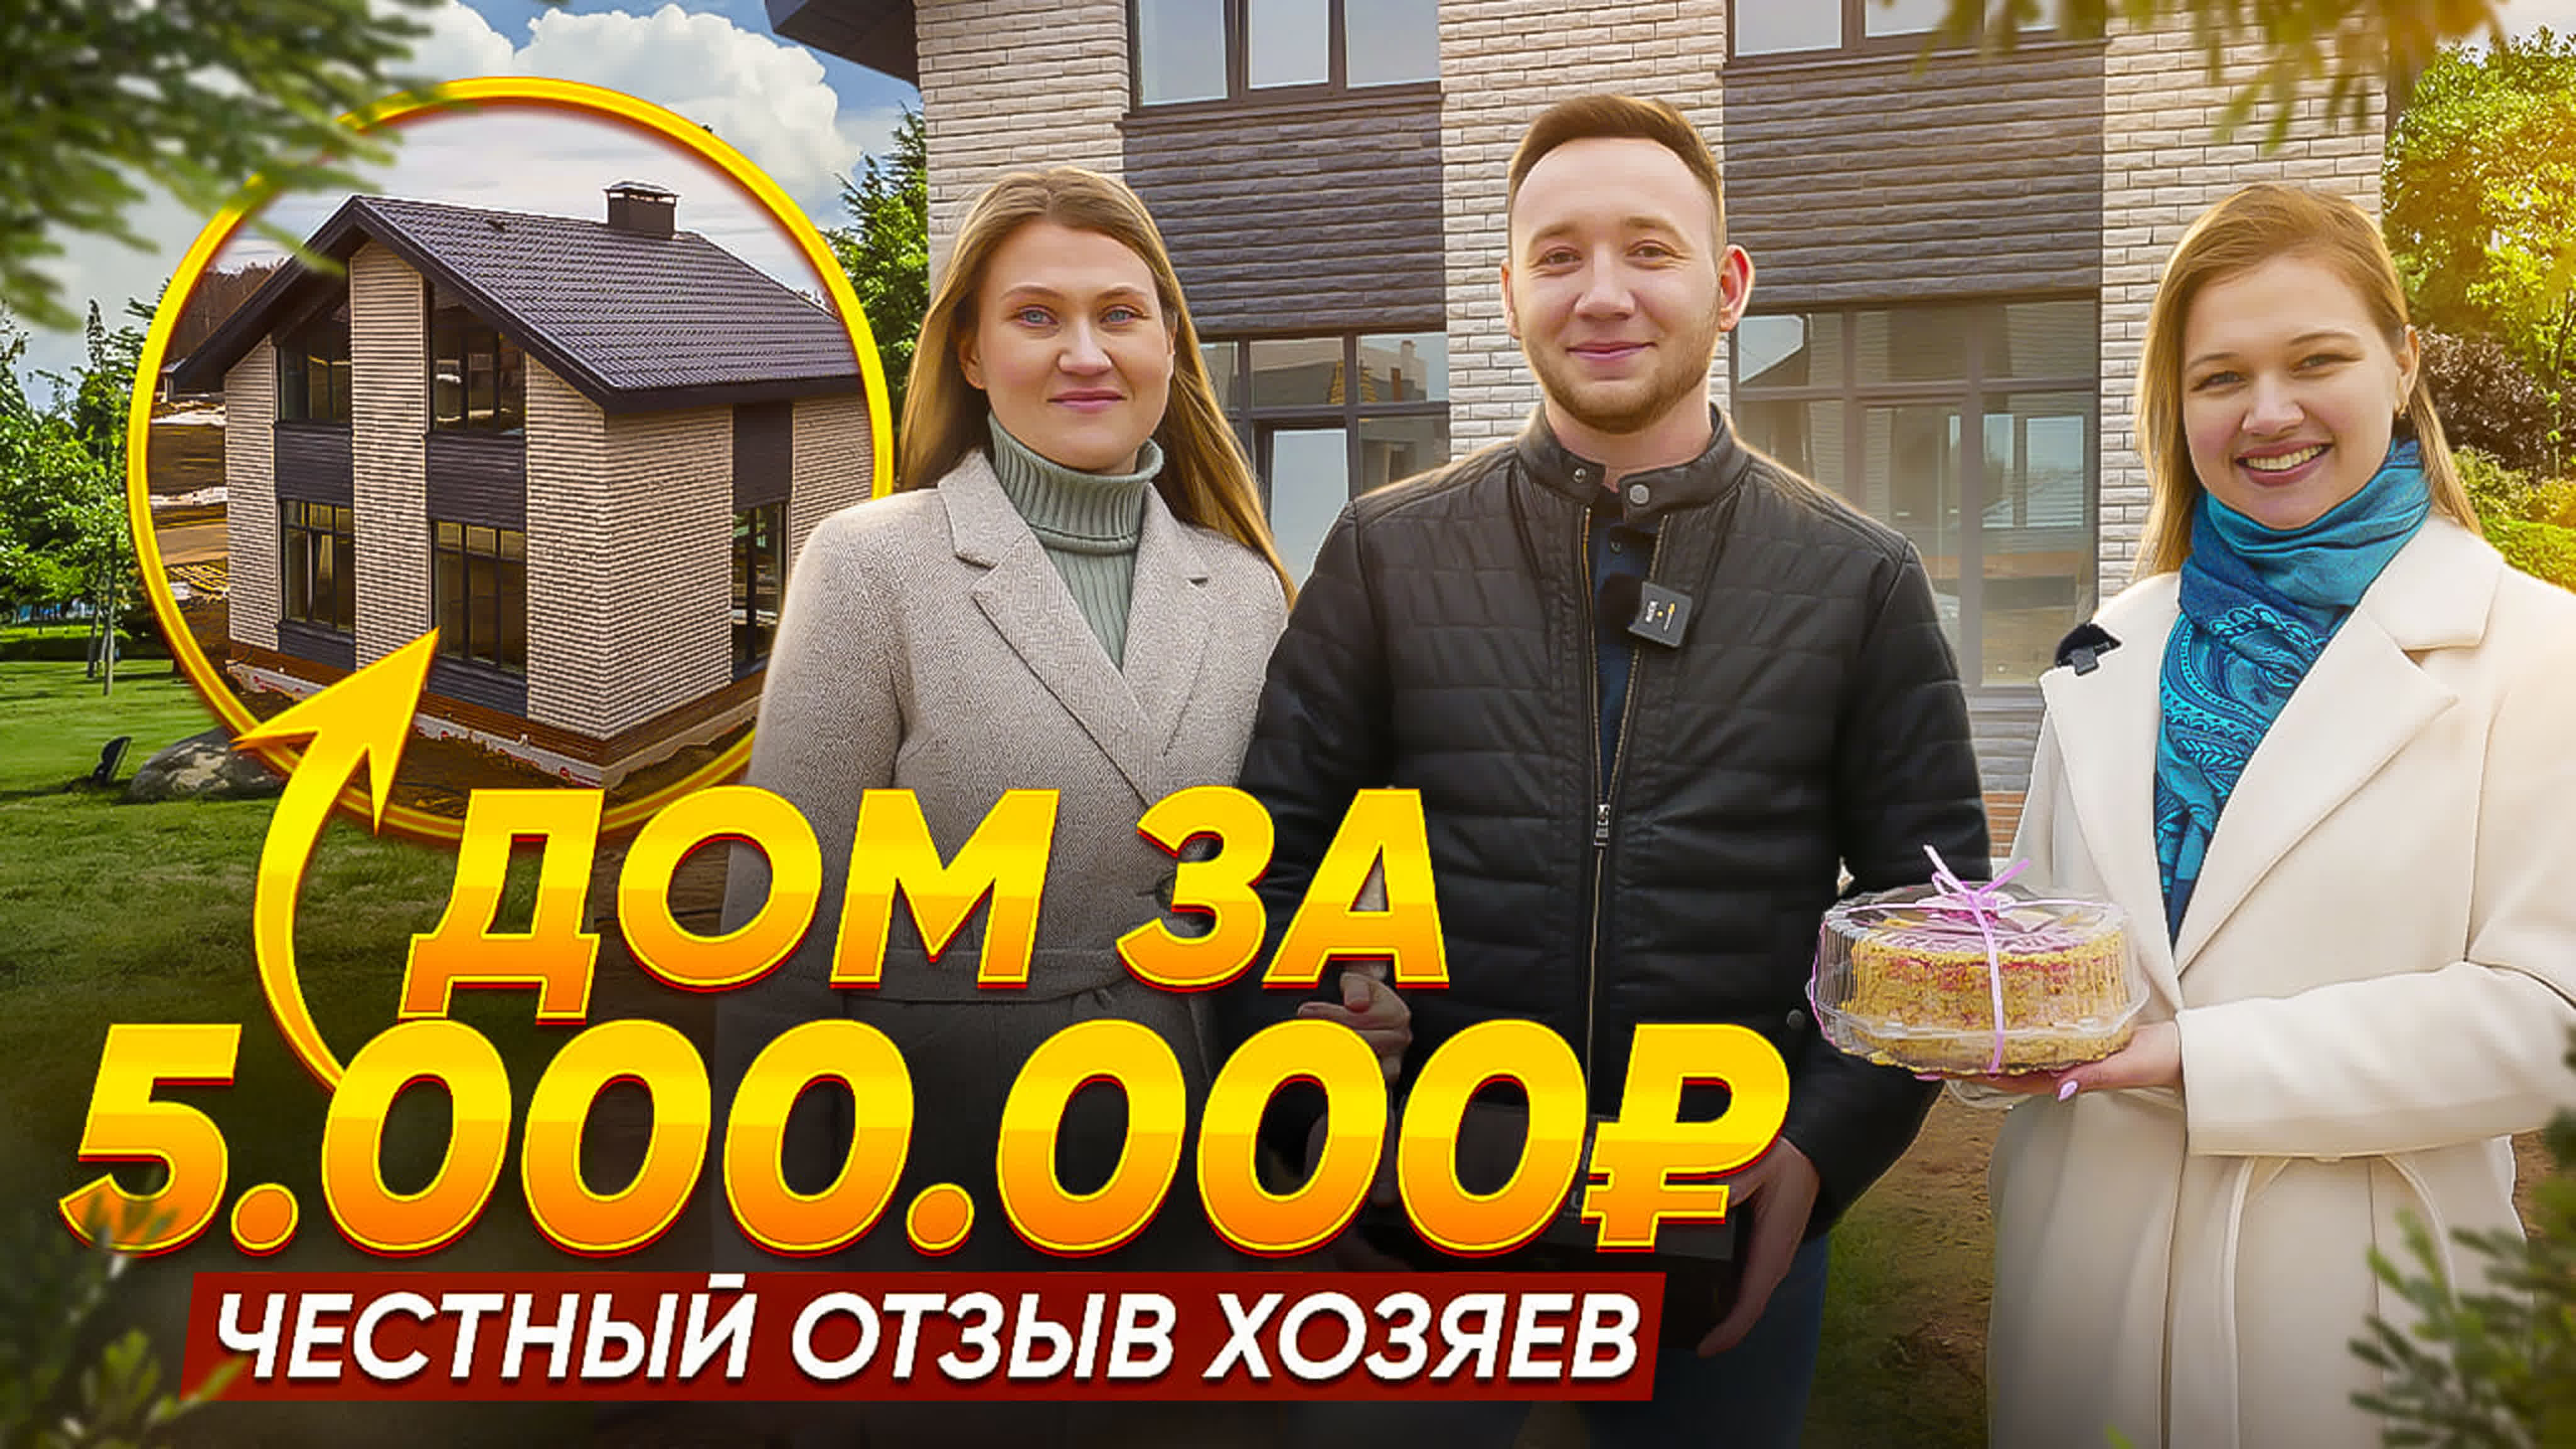 Дом за 5 млн рублей честный отзыв хозяев - BEST XXX TUBE